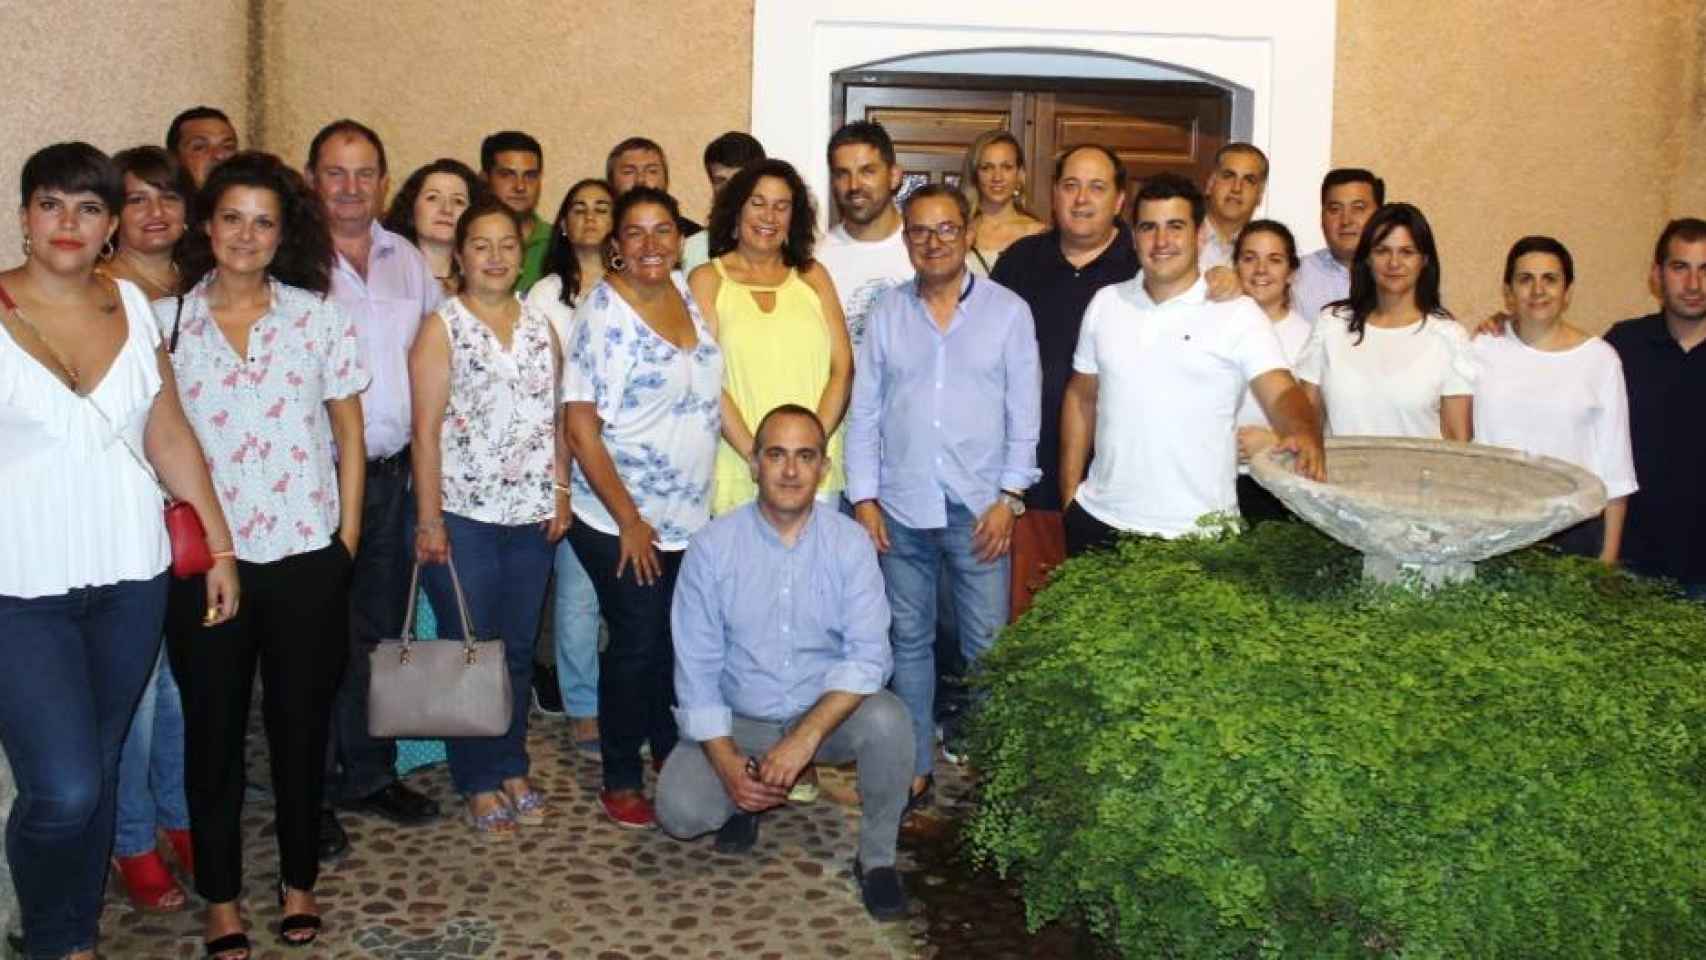 Reunión en Liétor de alcaldes y portavoces del PP en pueblos de la Sierra del Segura y Campos de Hellín